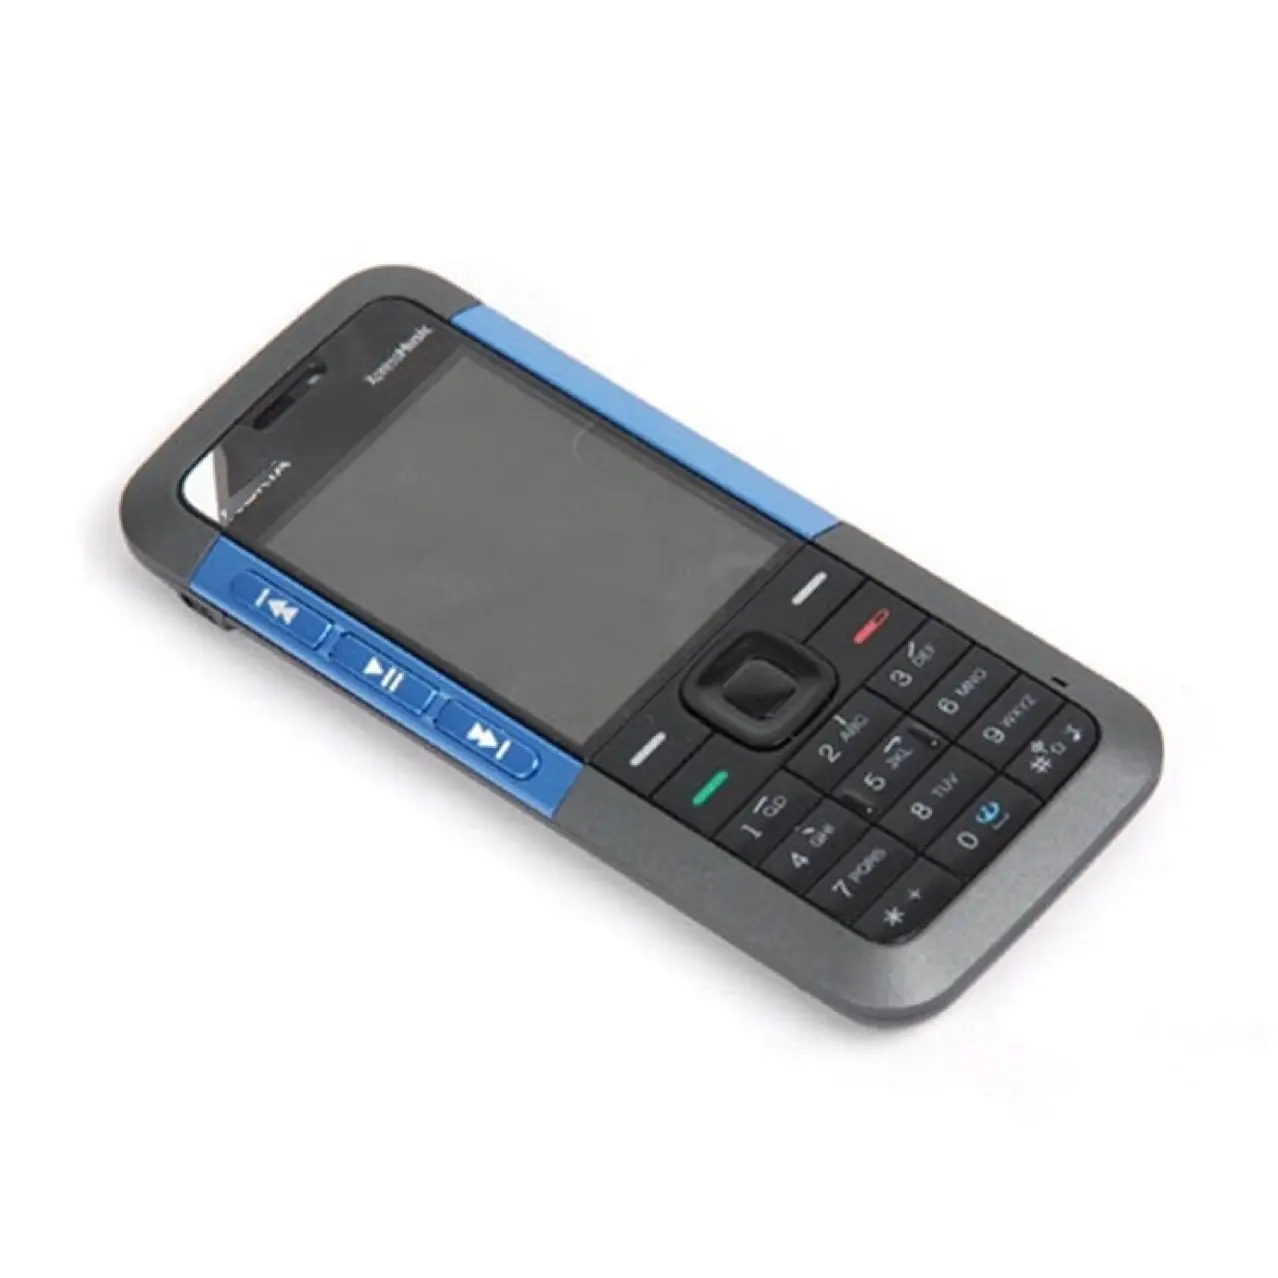 クロスボーダー外国貿易5310携帯電話GSMモバイル2Gストレートボタン学生高齢者携帯電話